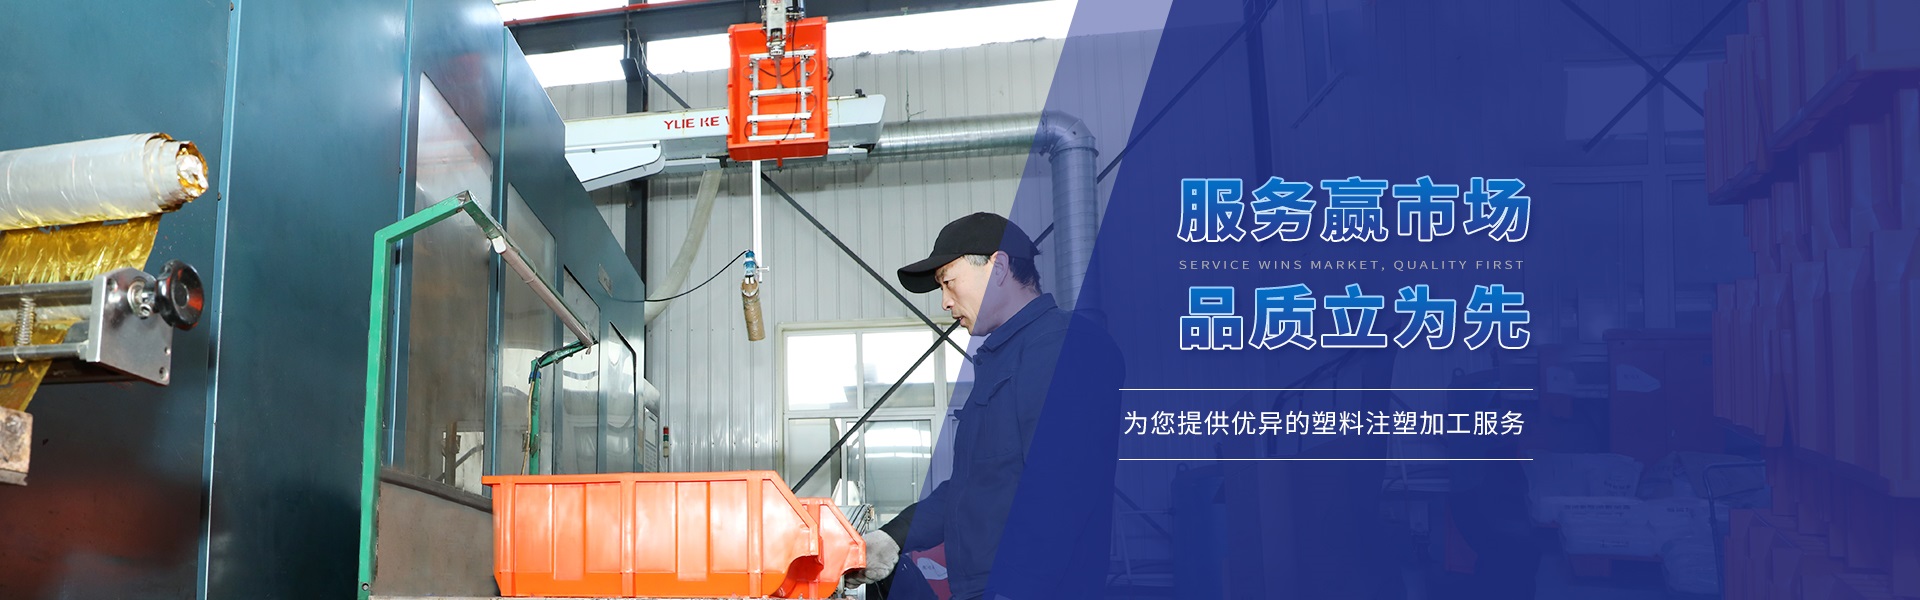 青岛中国福彩双色球专业提供塑料加工,塑料模具等产品服务.